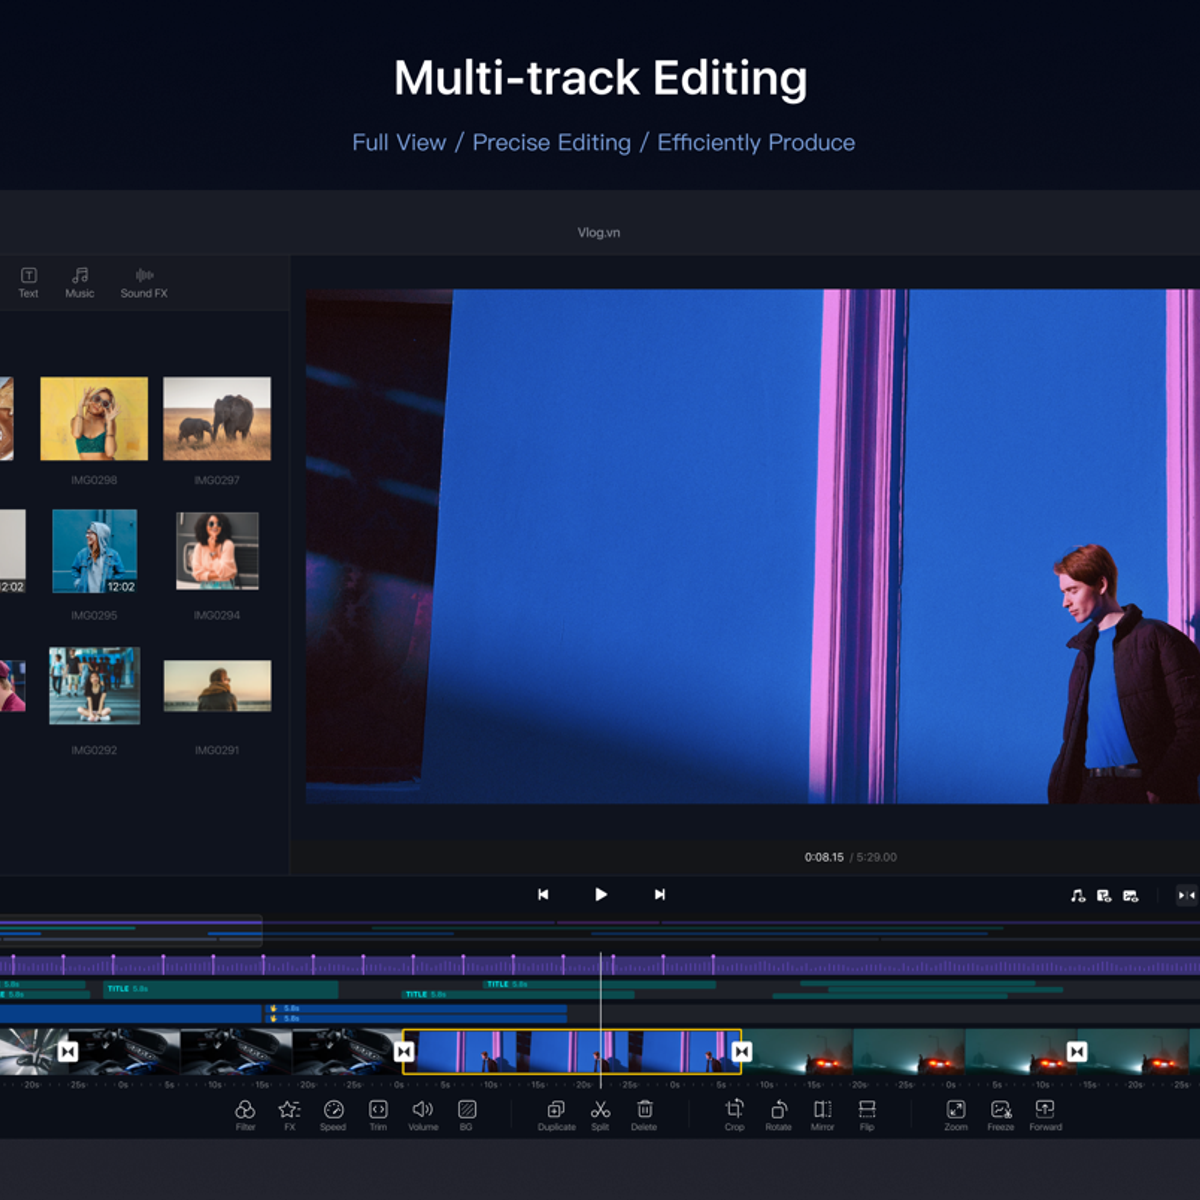 VN Video Editor Alternatives and Similar Software